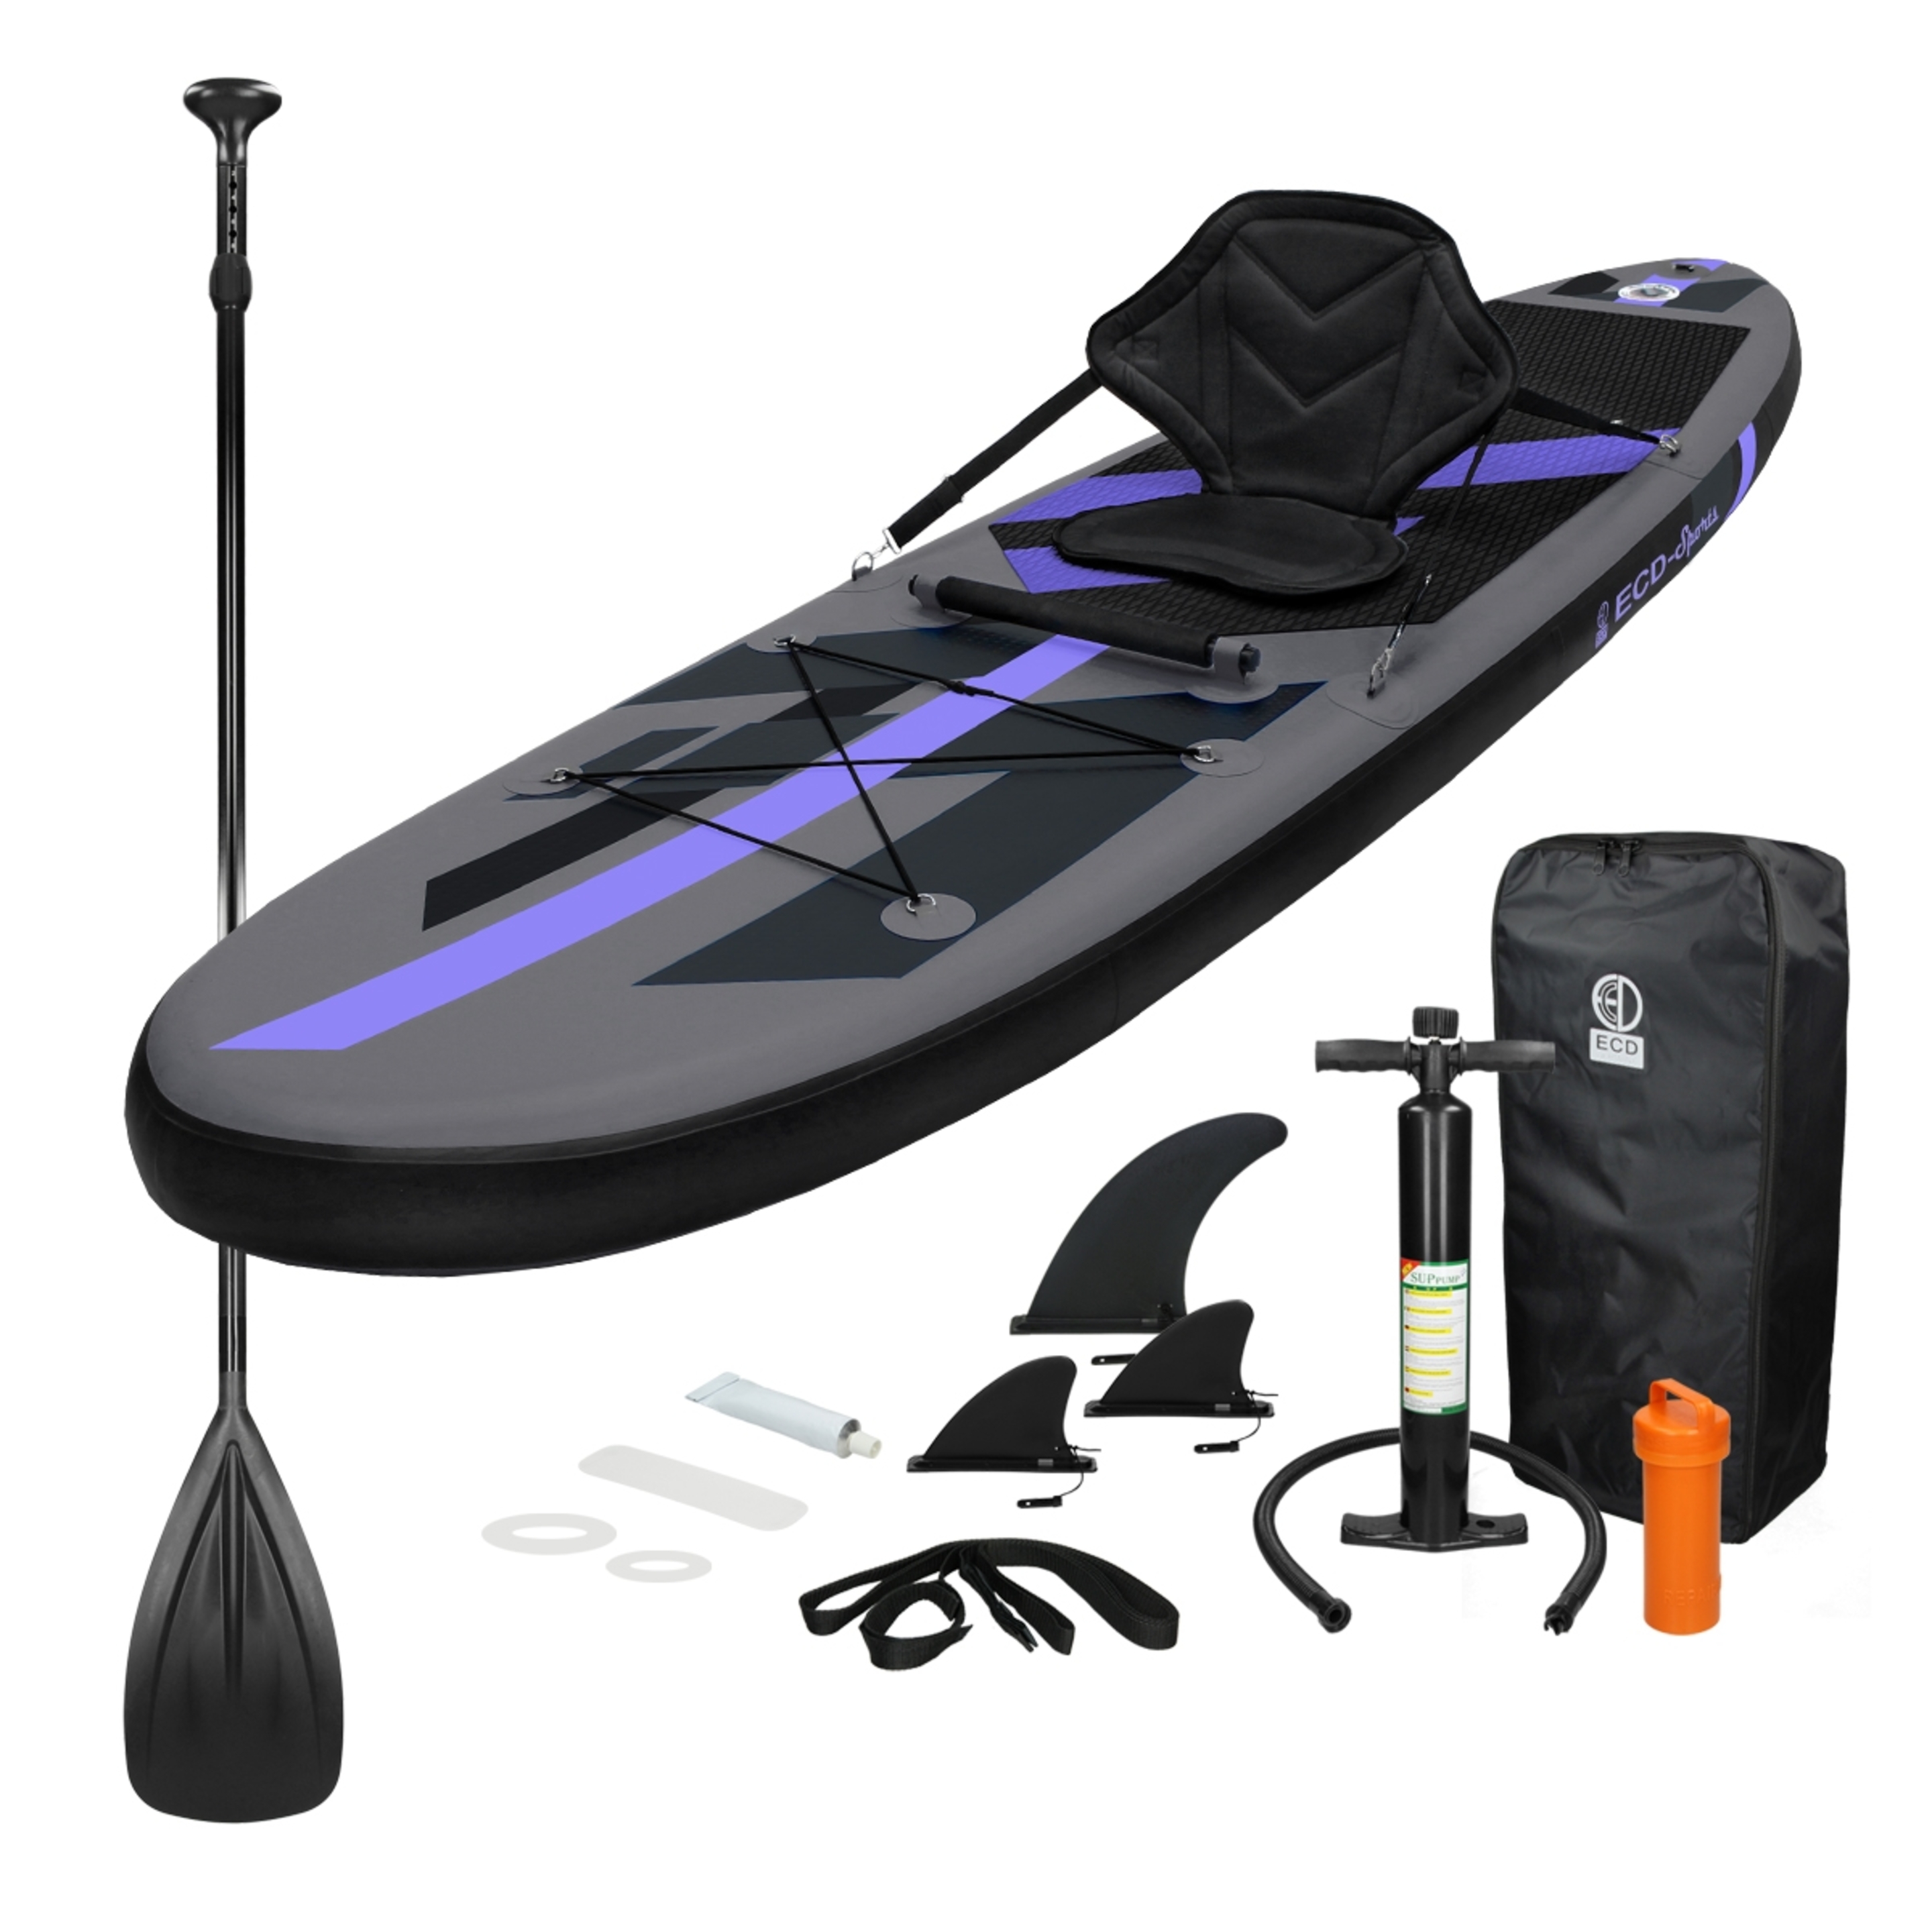 Makani Tabla Hinchable Sup Tipo Kayak Con Accesorios - Negro/Morado - Una fantástica tabla allround  MKP